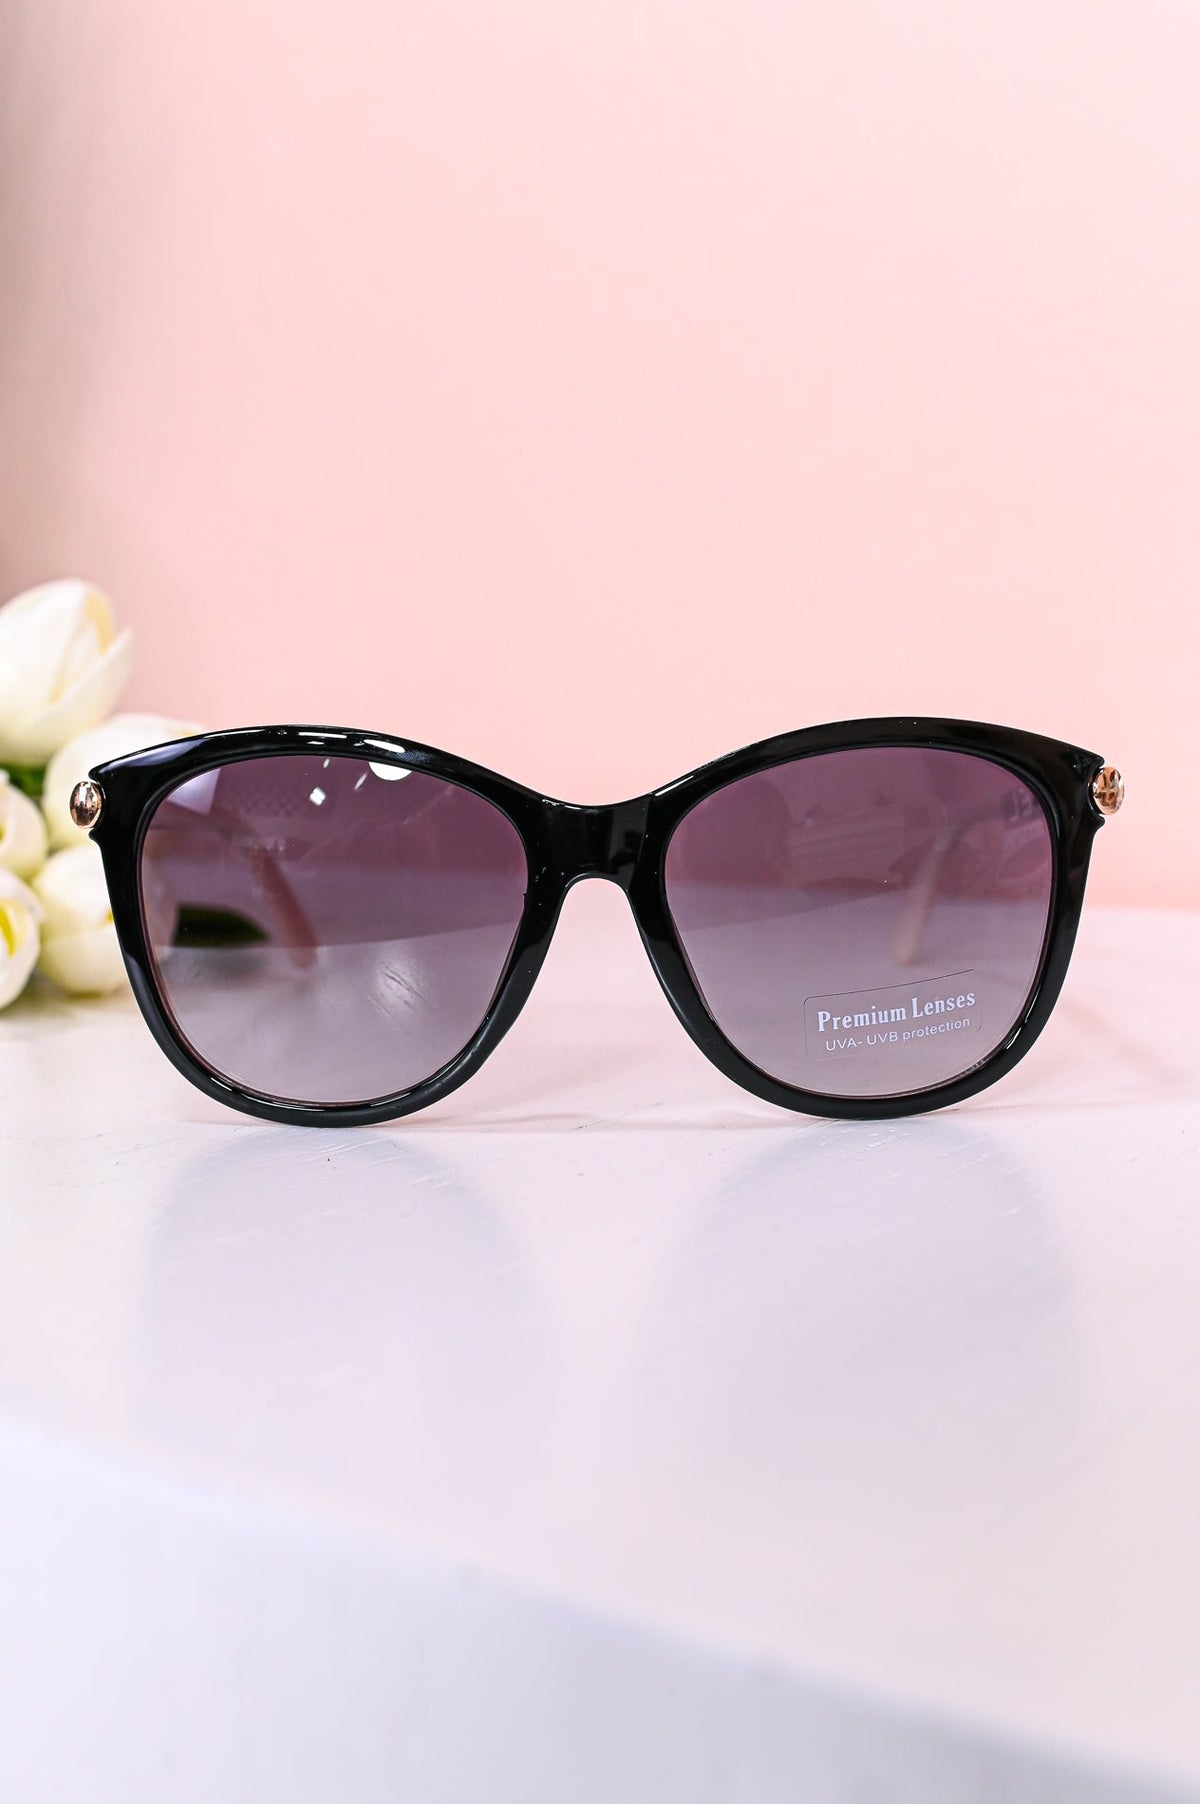 Black/White Oversized Cateye Lens Sunglasses - SGL330BK